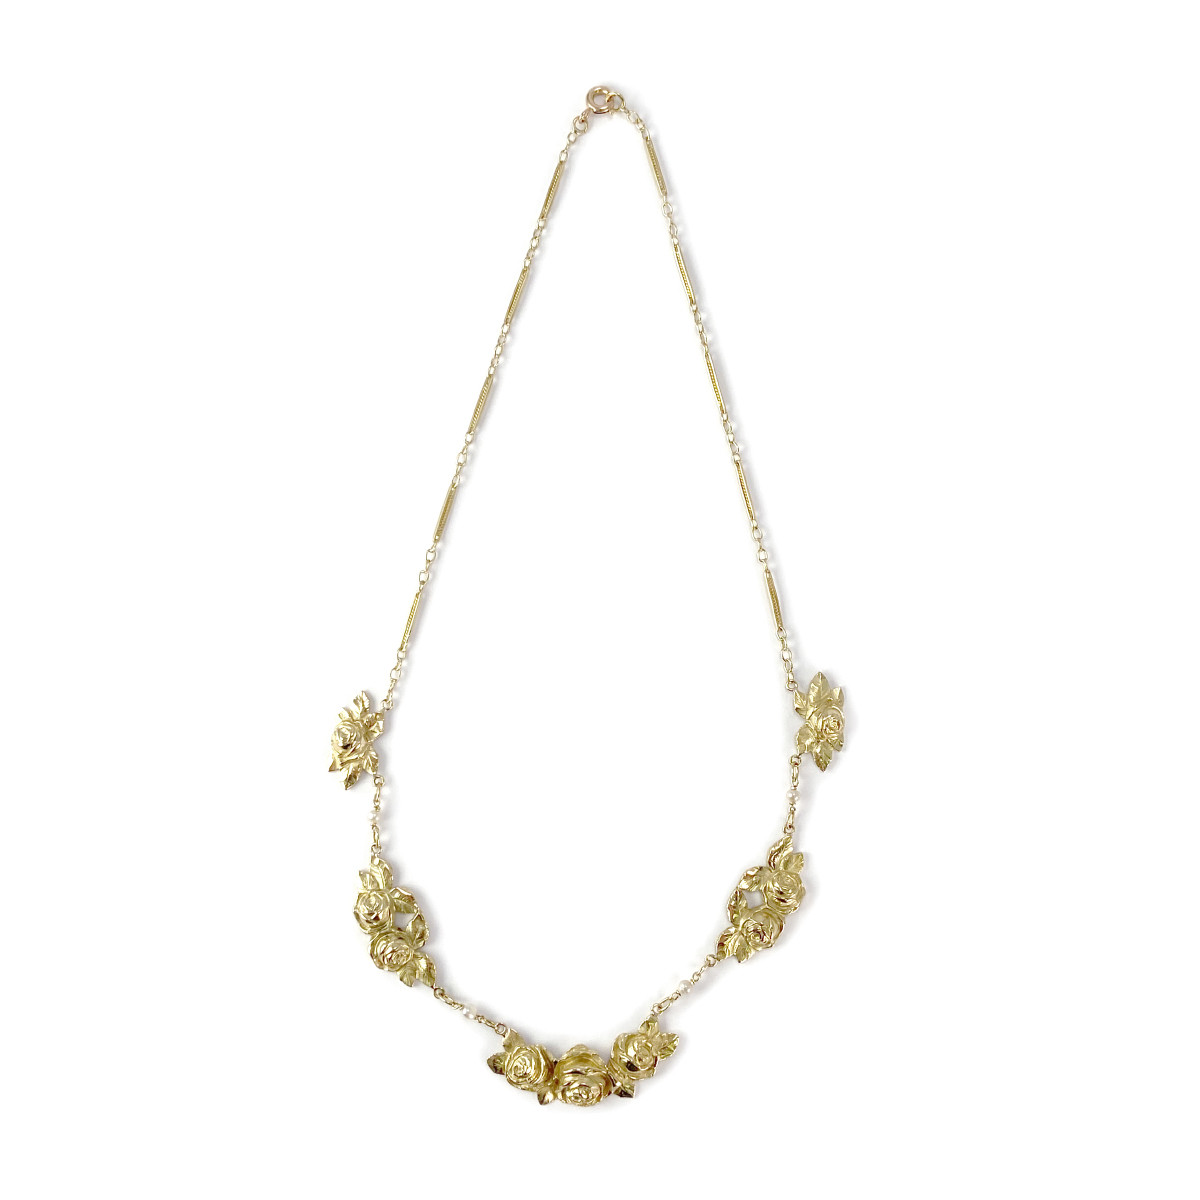 Collier d'occasion or 750 jaune maille fantaisie perles de culture blanches 41 cm - vue 2